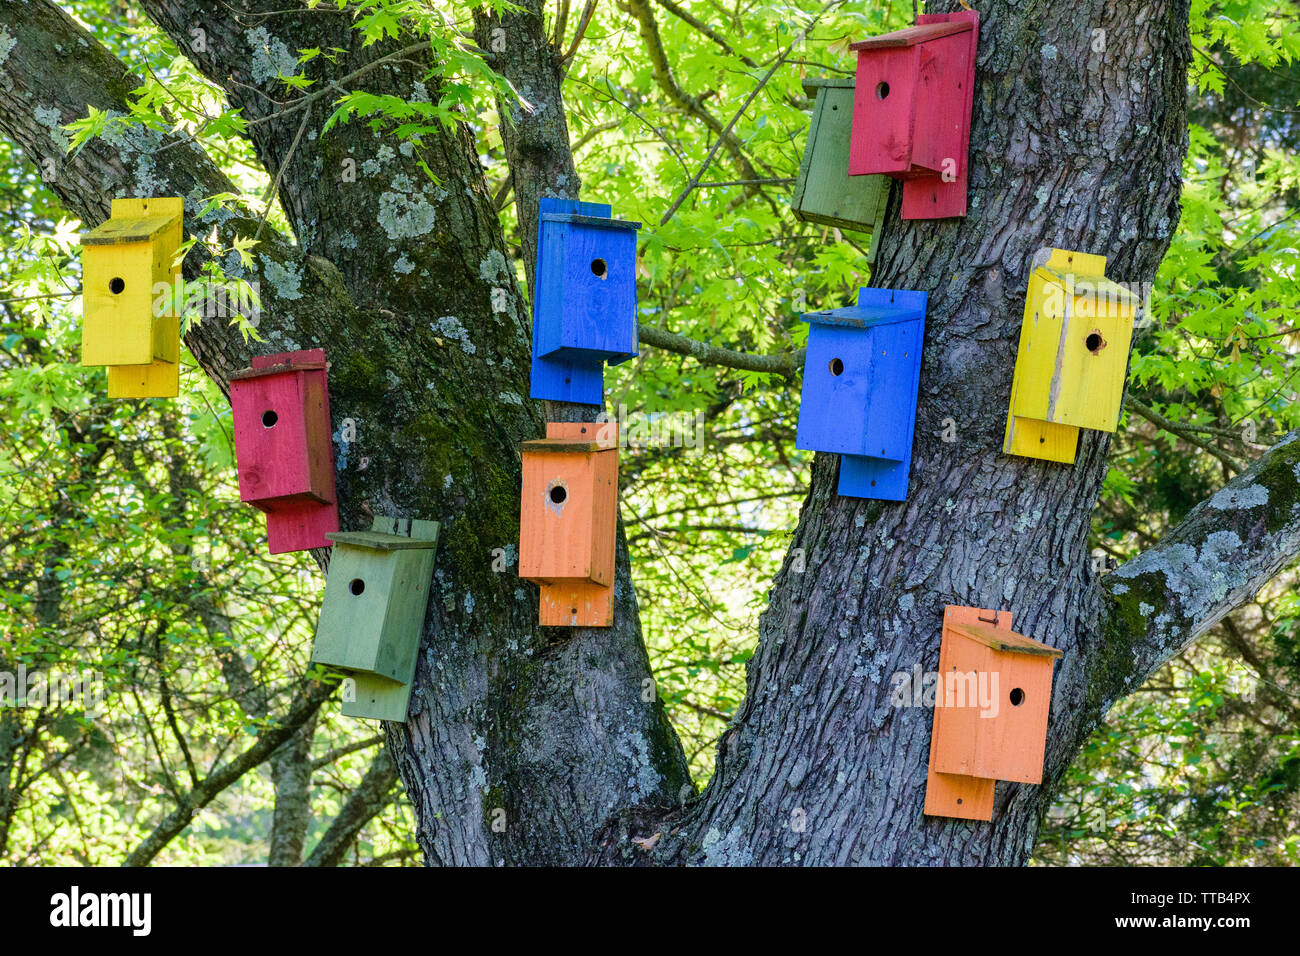 Dix maisons d'oiseaux aux couleurs vives, peintes dans des tons pastel rouge, jaune, bleu, orange et vert, sur un arbre au printemps. Banque D'Images